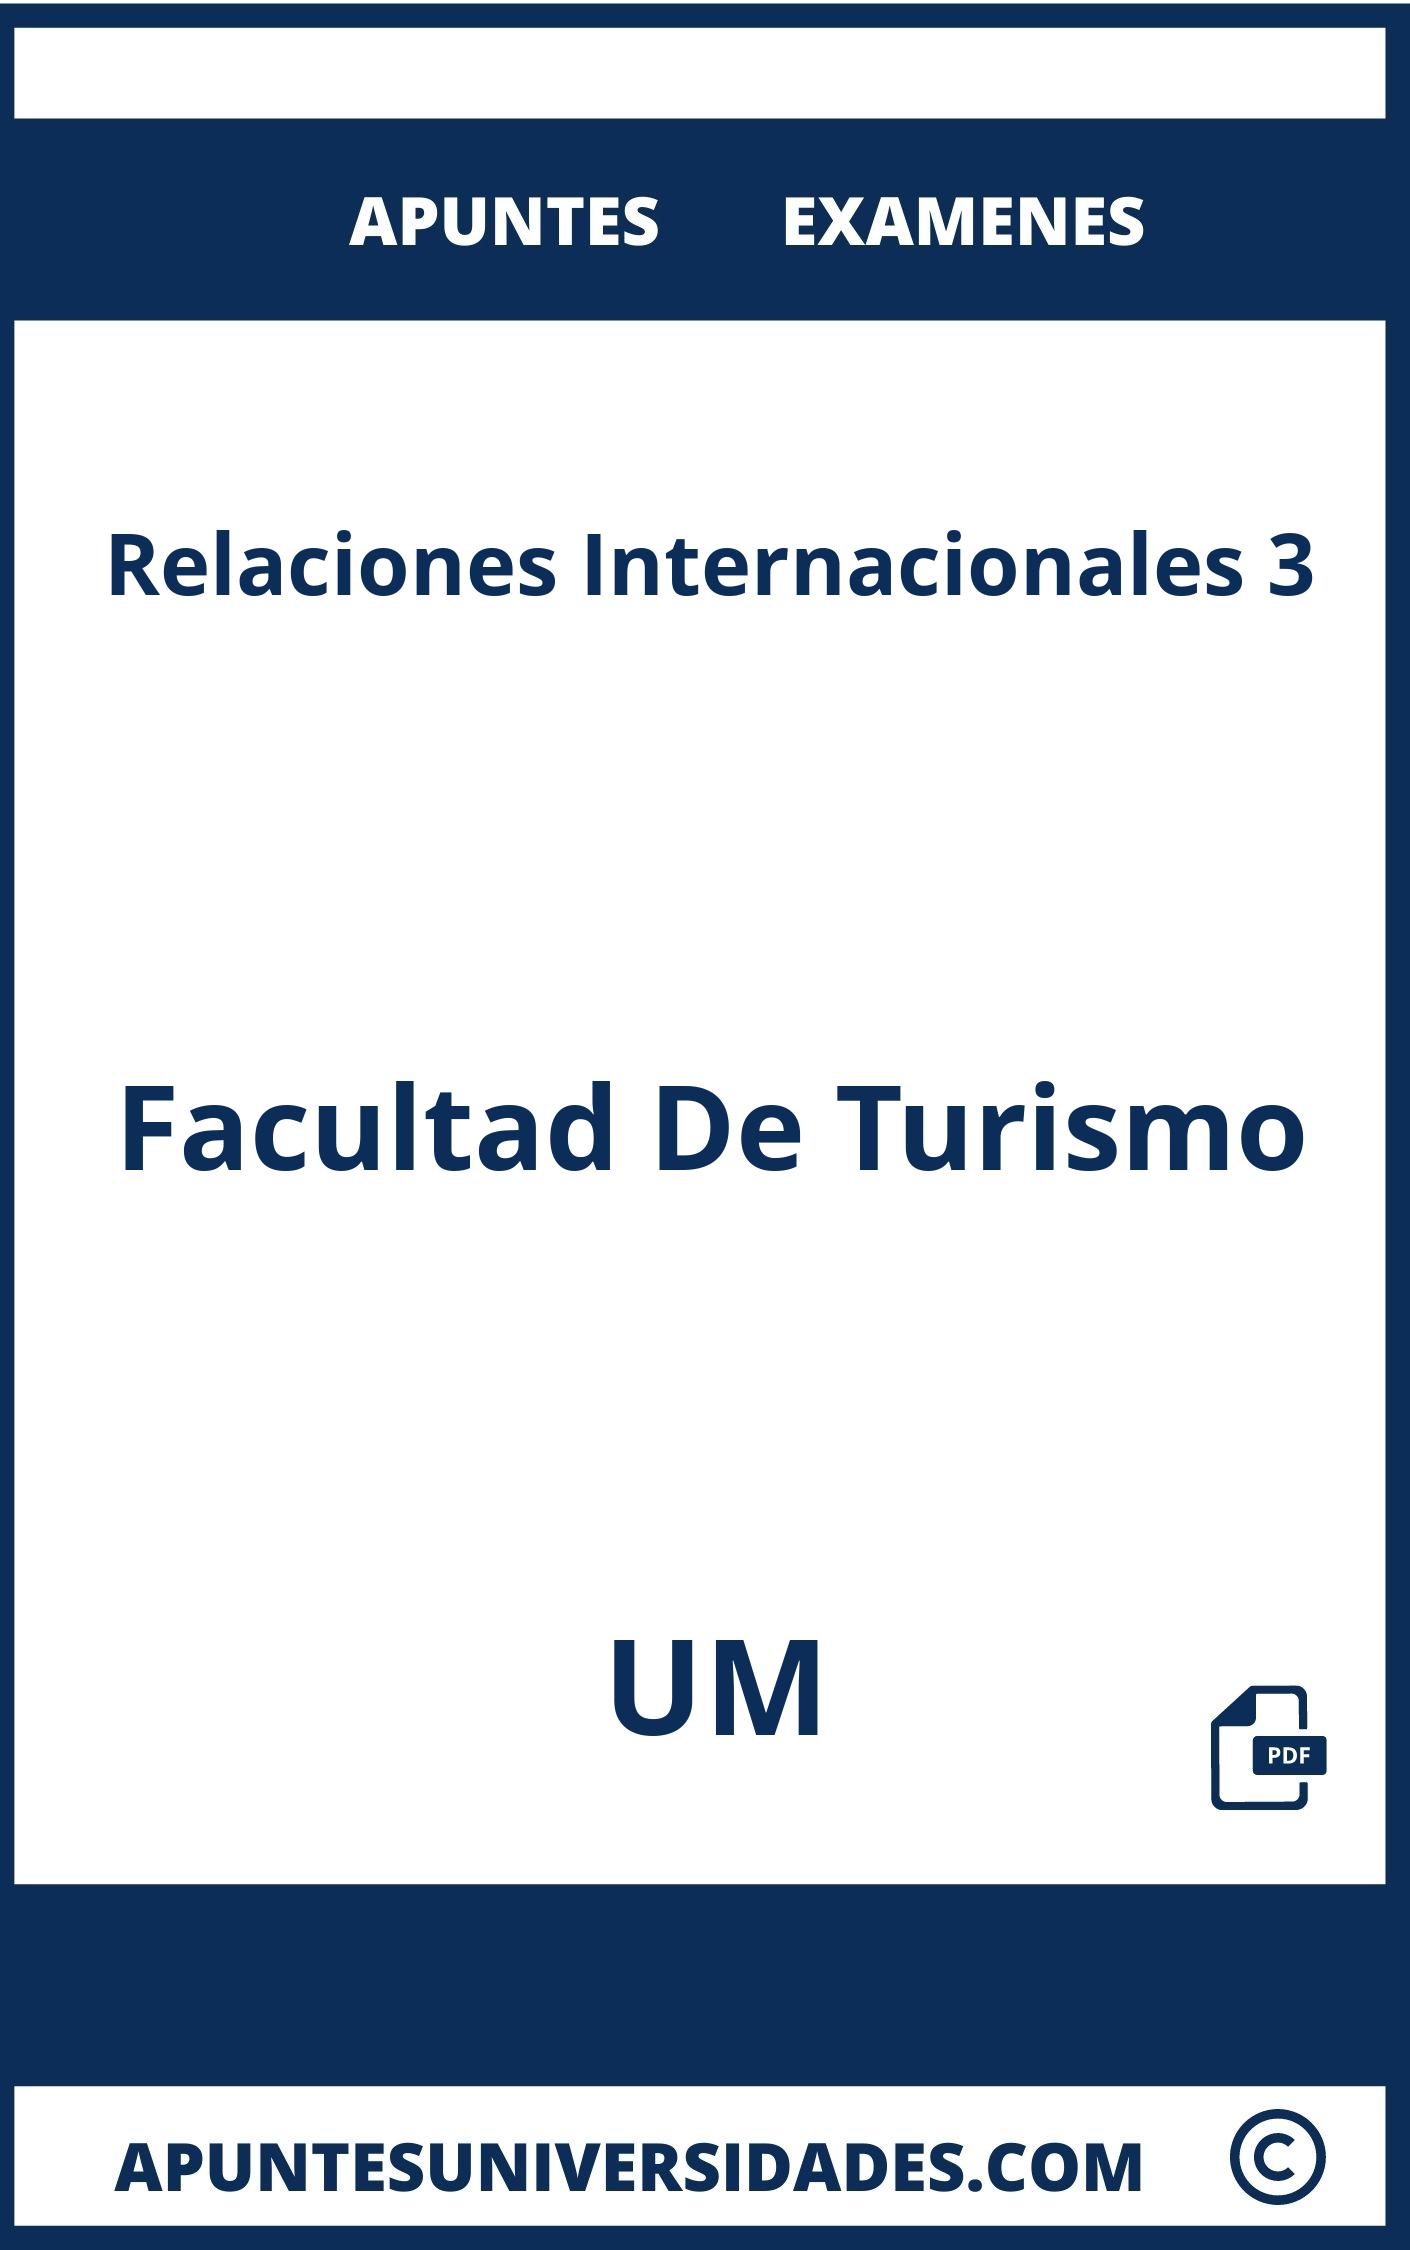 Apuntes Examenes Relaciones Internacionales 3 UM